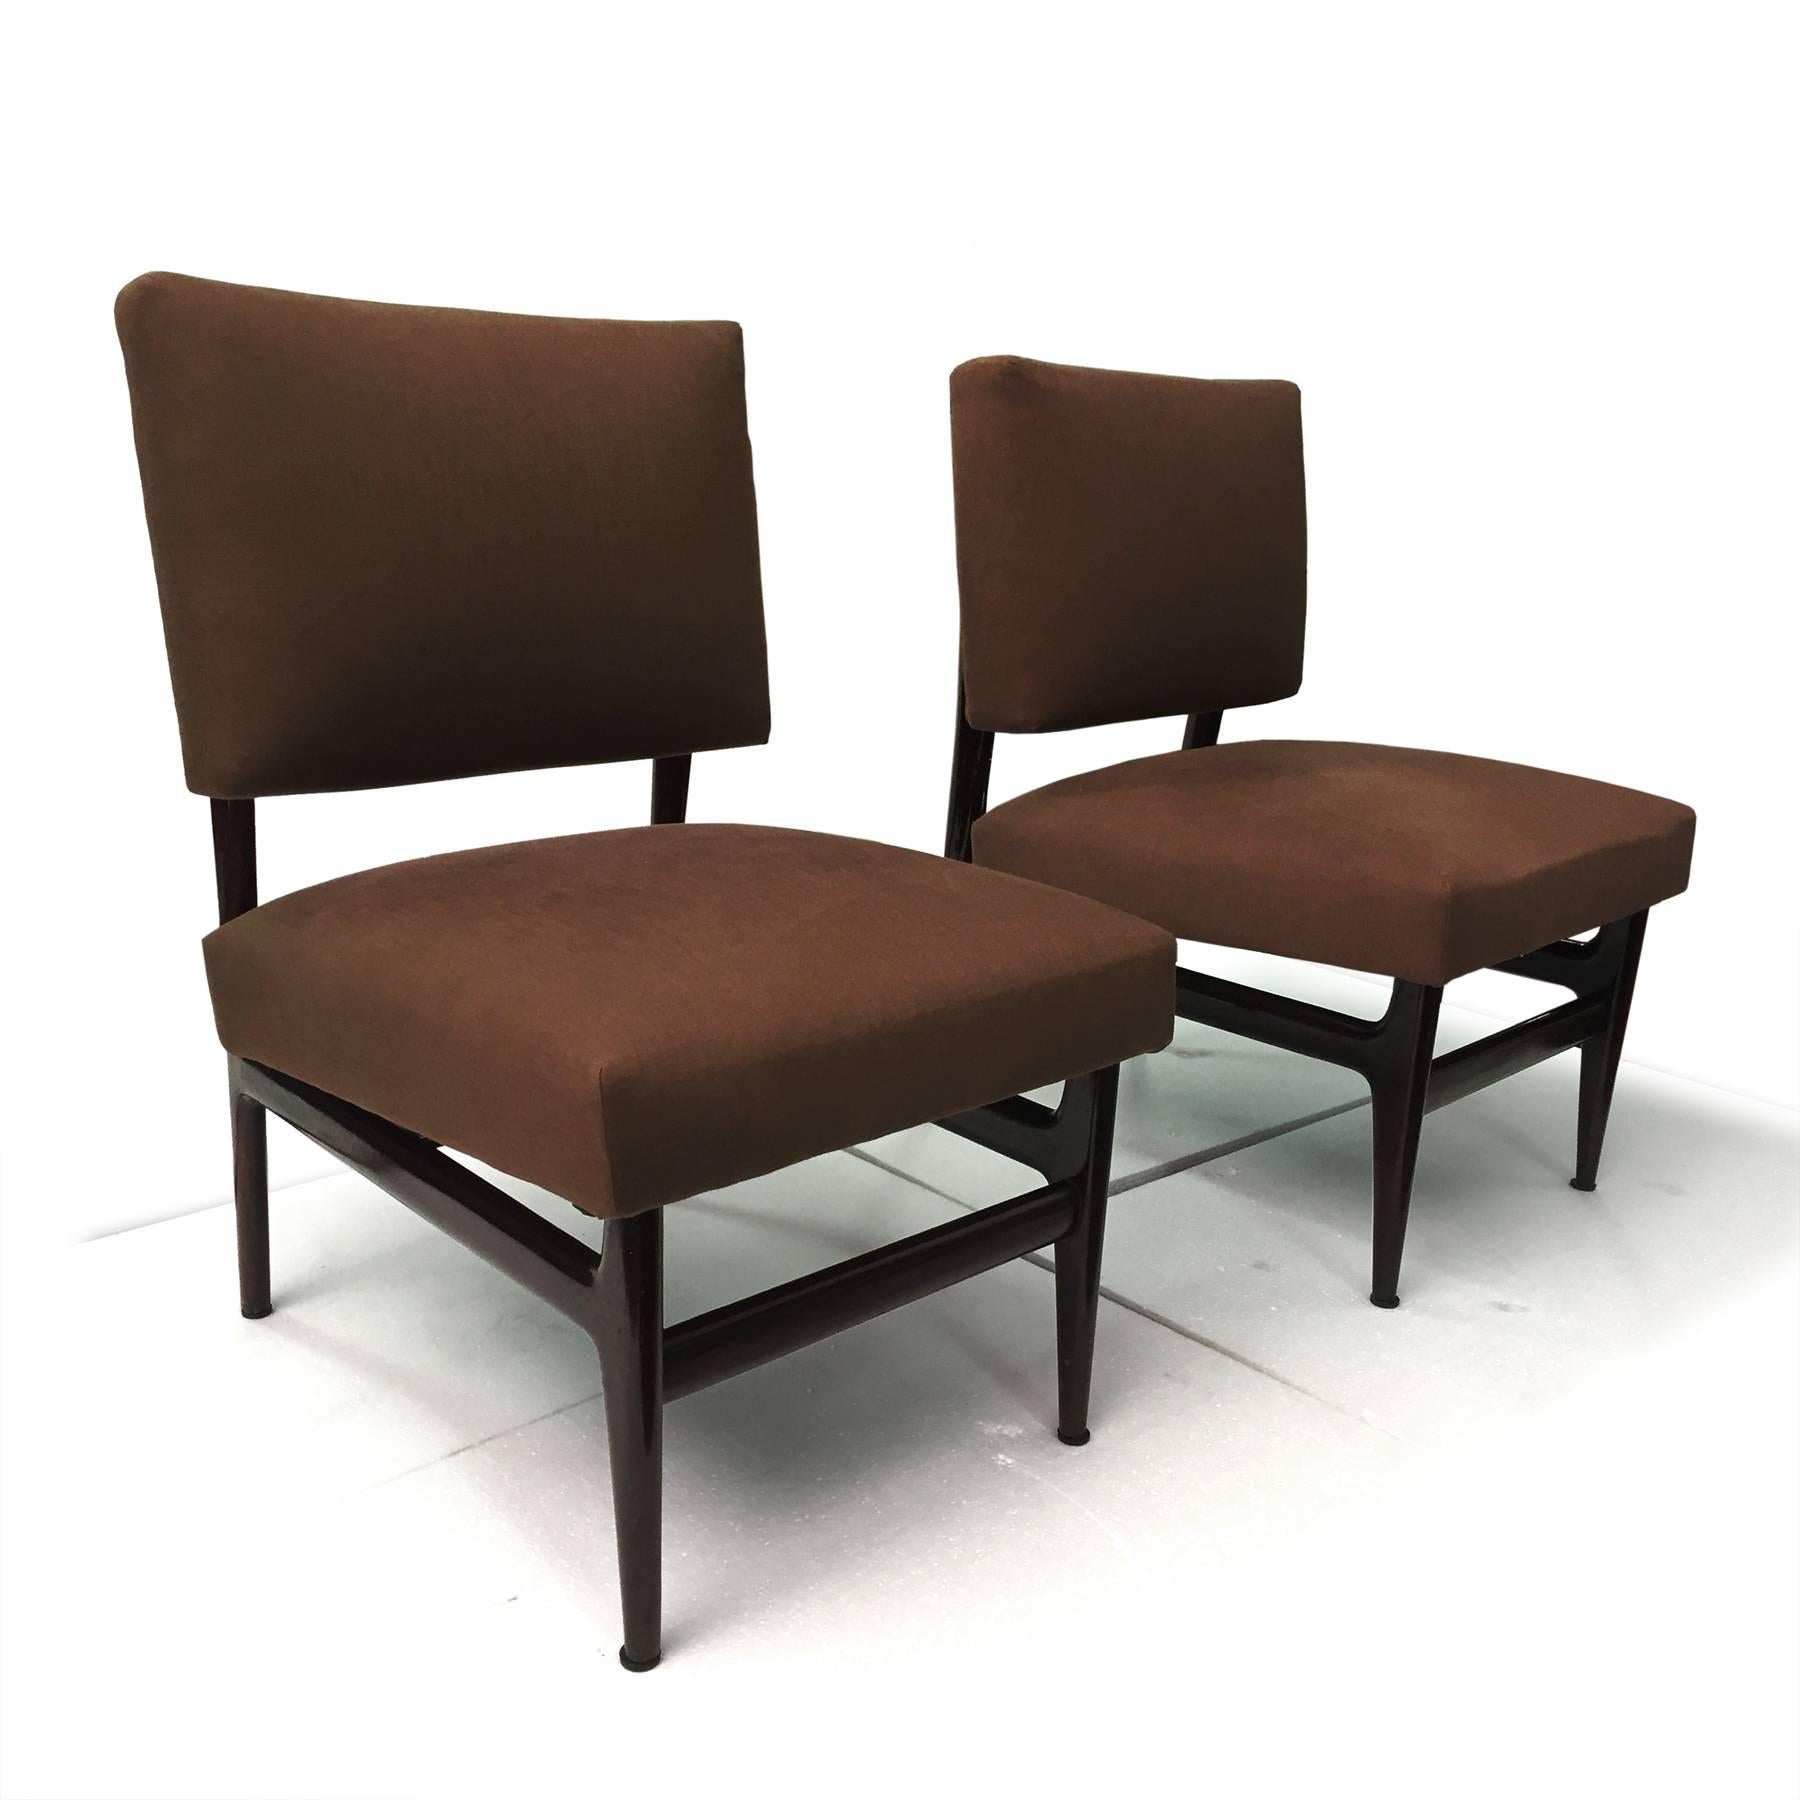 Sehr elegantes und bequemes Paar italienischer Sessel, entworfen und hergestellt von Vittorio Dassi in den 1950er Jahren.
Die Sitze sind mit braunem Baumwollstoff bezogen, in ausgezeichnetem Zustand der Zeit ohne Beschädigungen und oder Stoffrisse,